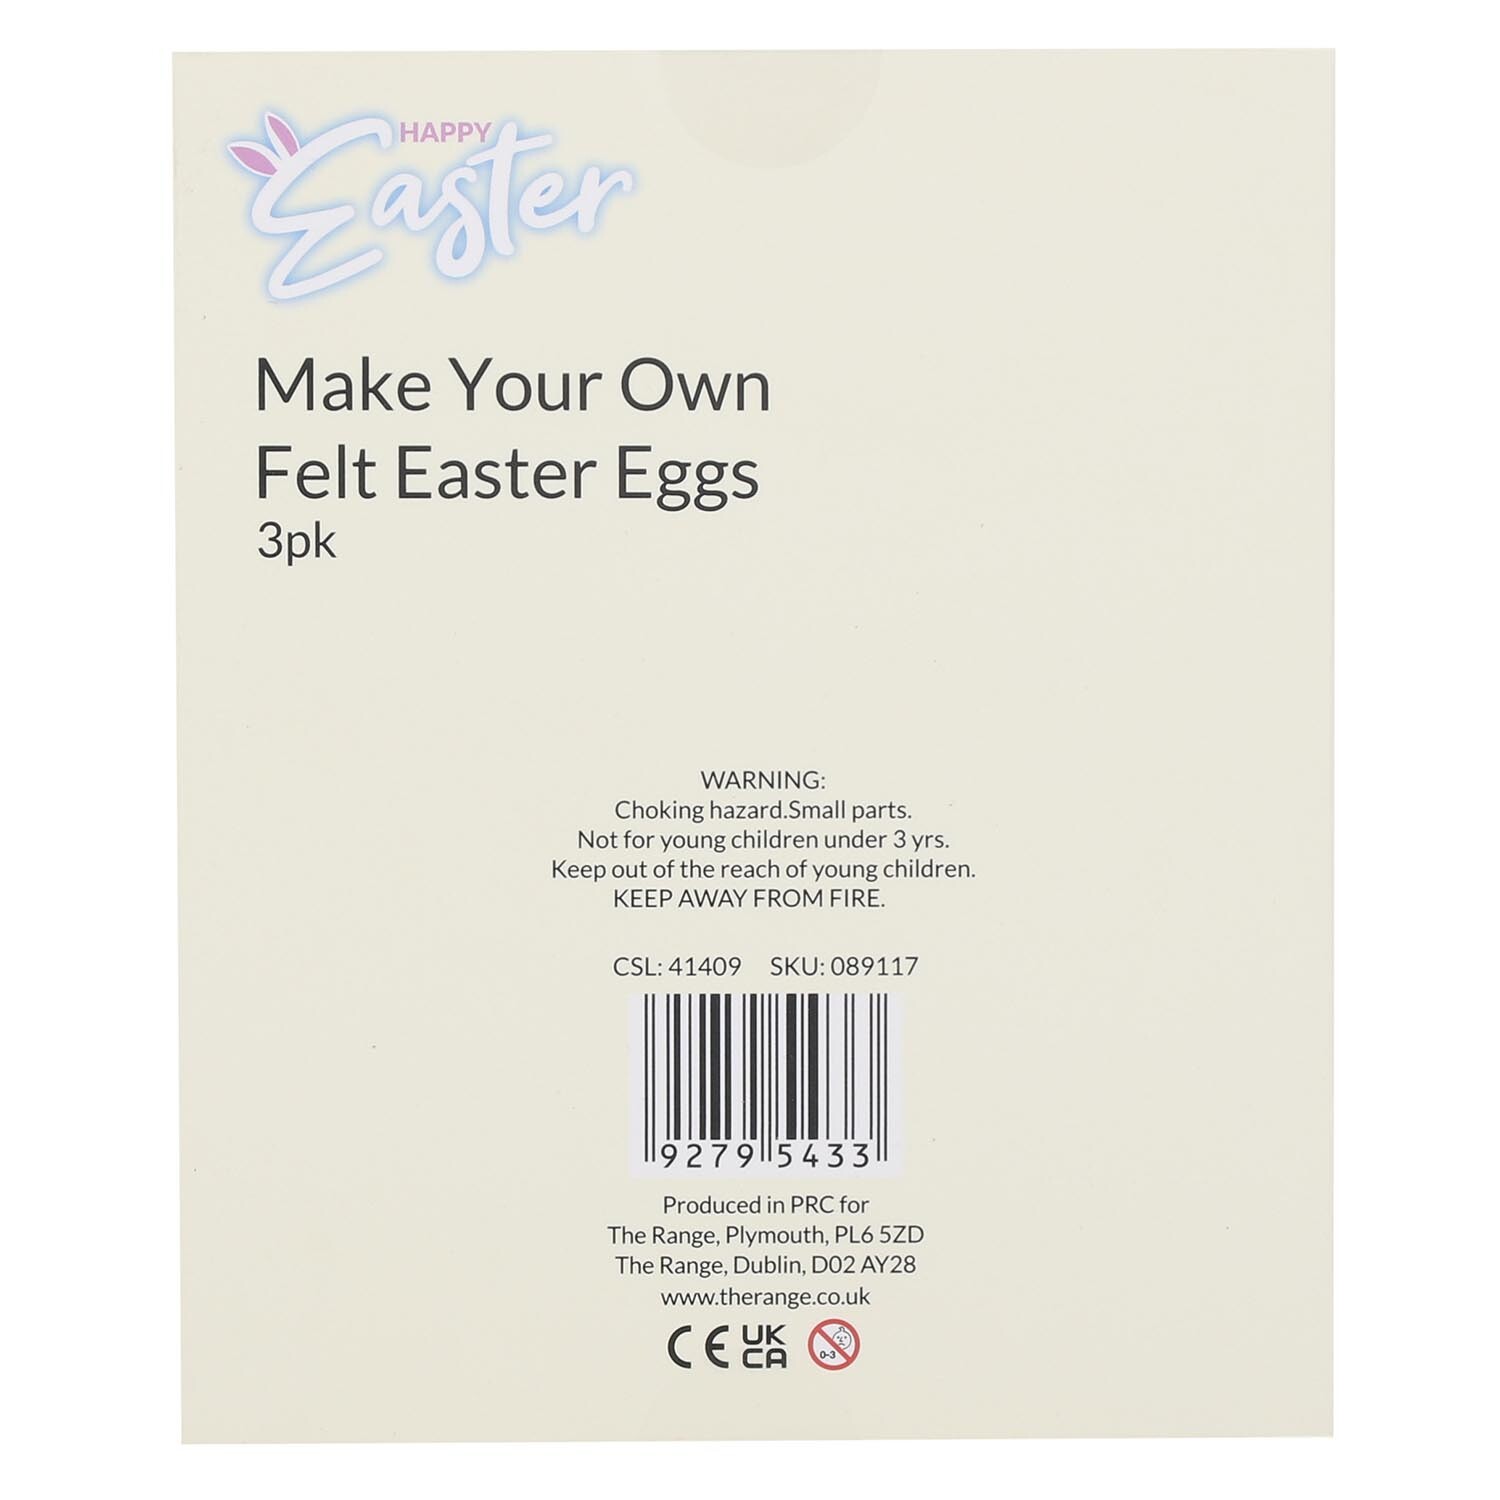 Make Your Own Felt Easter Eggs Image 2